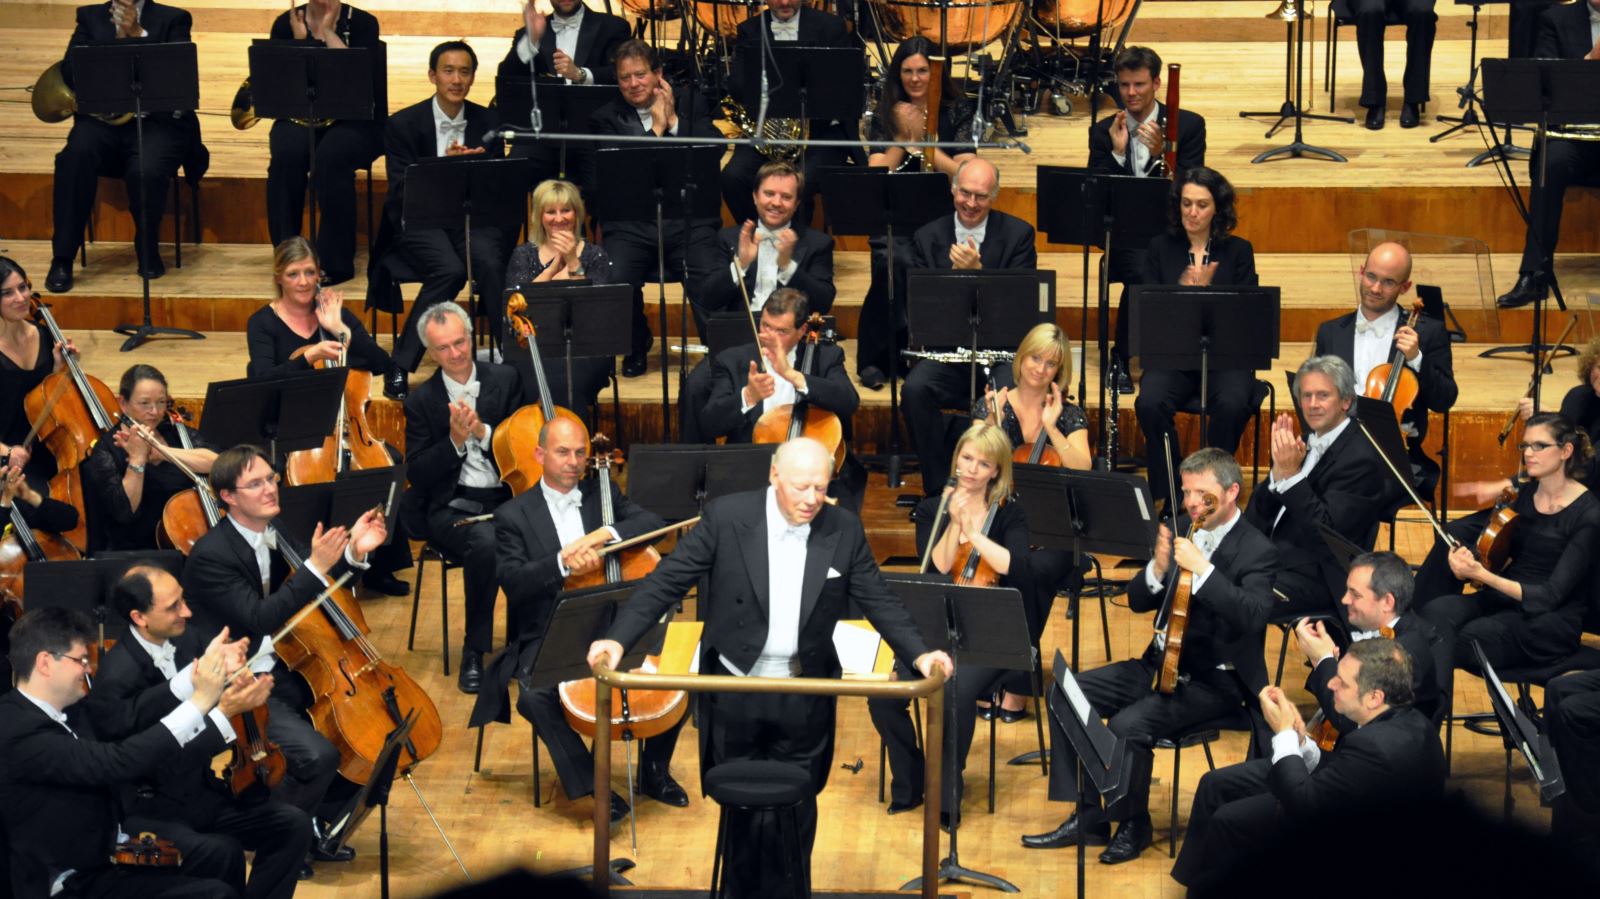 Dàn nhạc danh tiếng London Symphony Orchestra trình diễn 'Tiến quân ca' ở Hà Nội